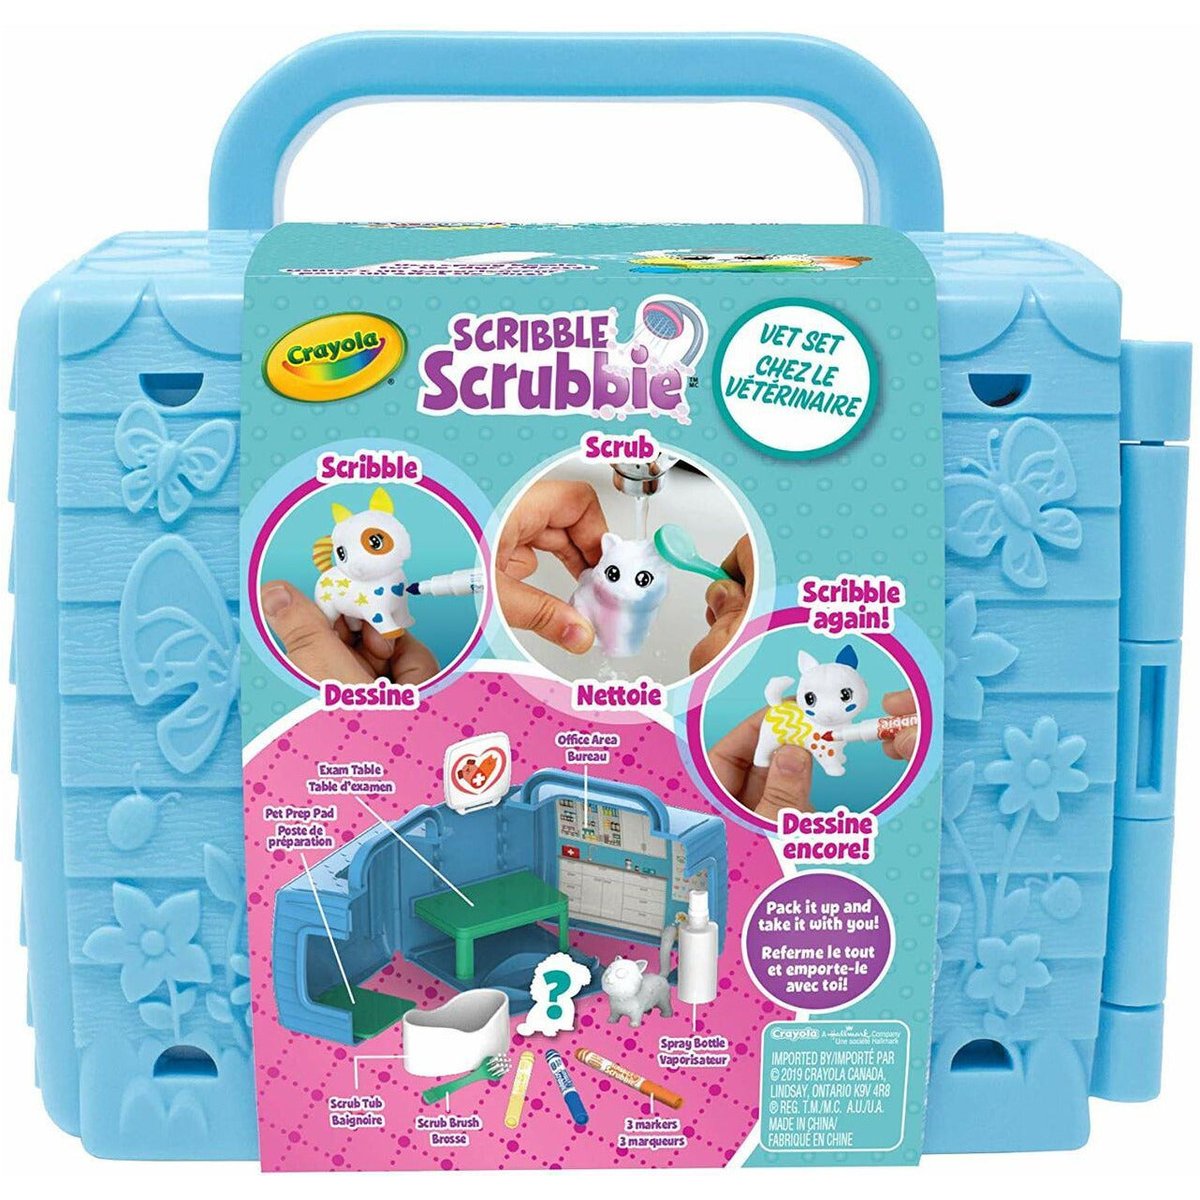 Scribble Scrubbie Pet Set - Concordance